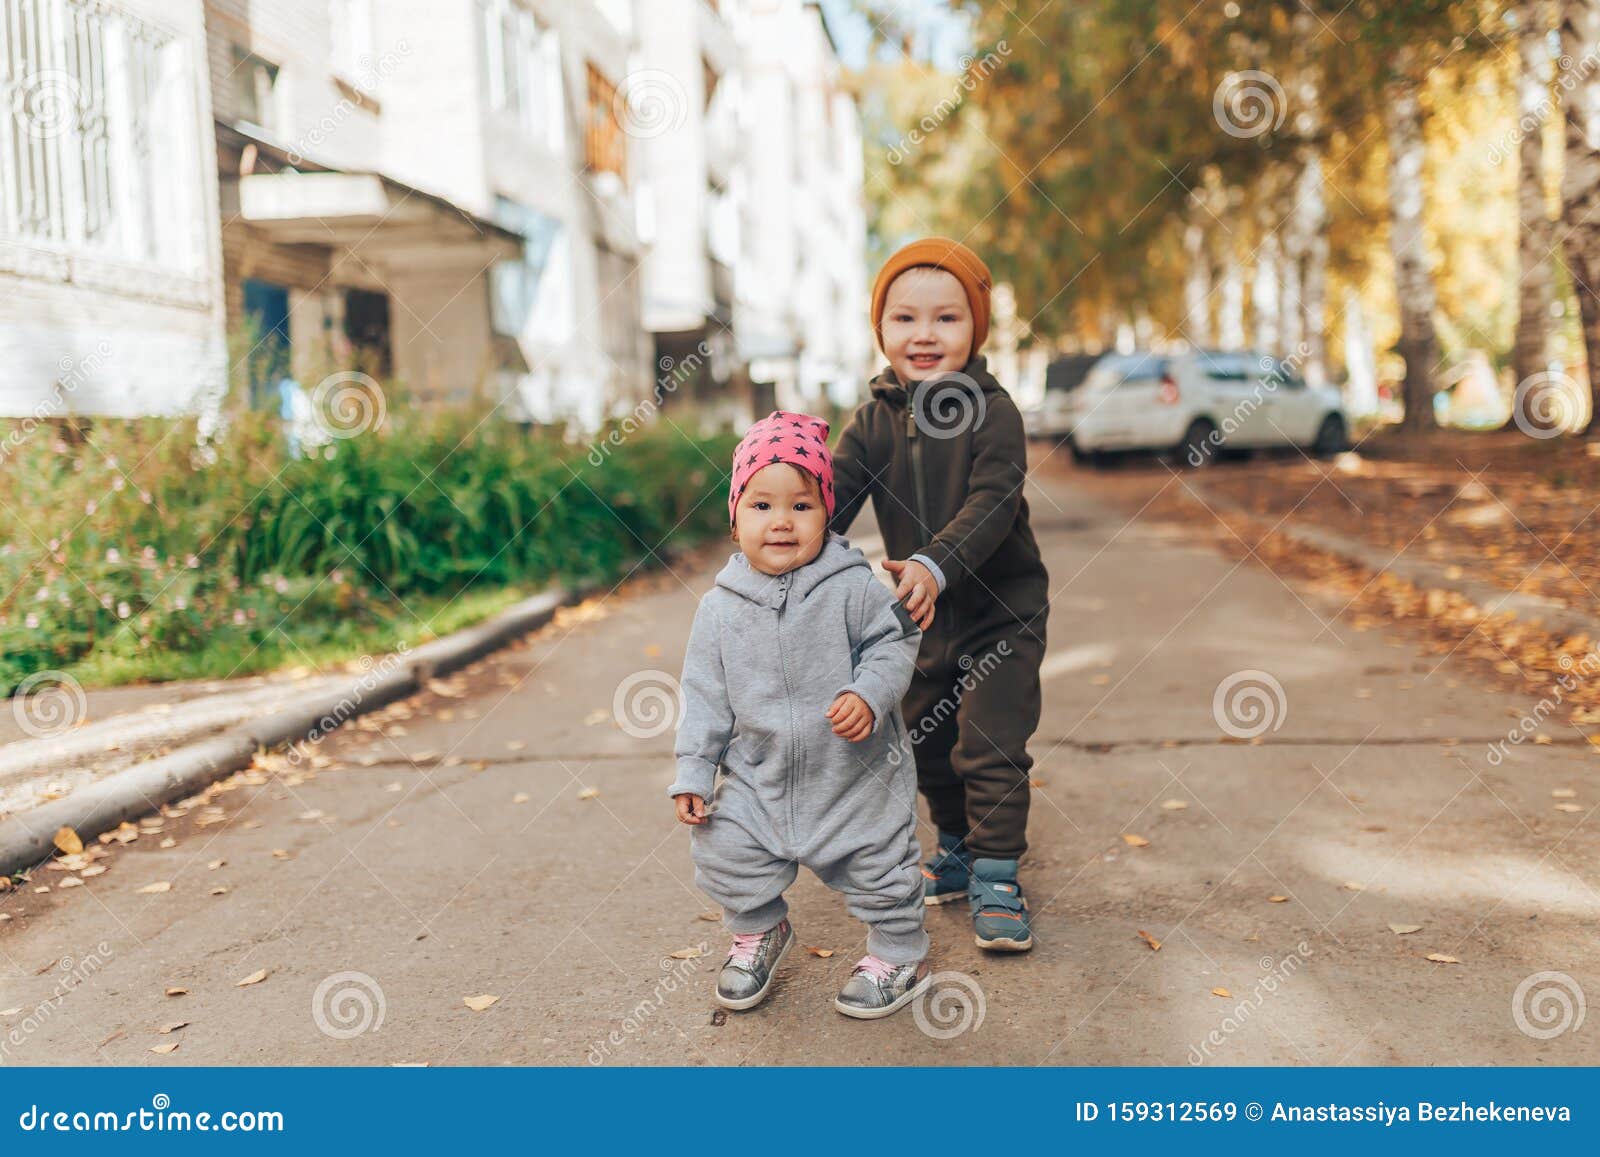 Una Pequeña Niña De 1 Año Y Un Niño De 3 Años Caminando Al Aire Libre Con  Ropa En Elegantes Vestíbulos Imagen de archivo - Imagen de hermoso, hierba:  159312569